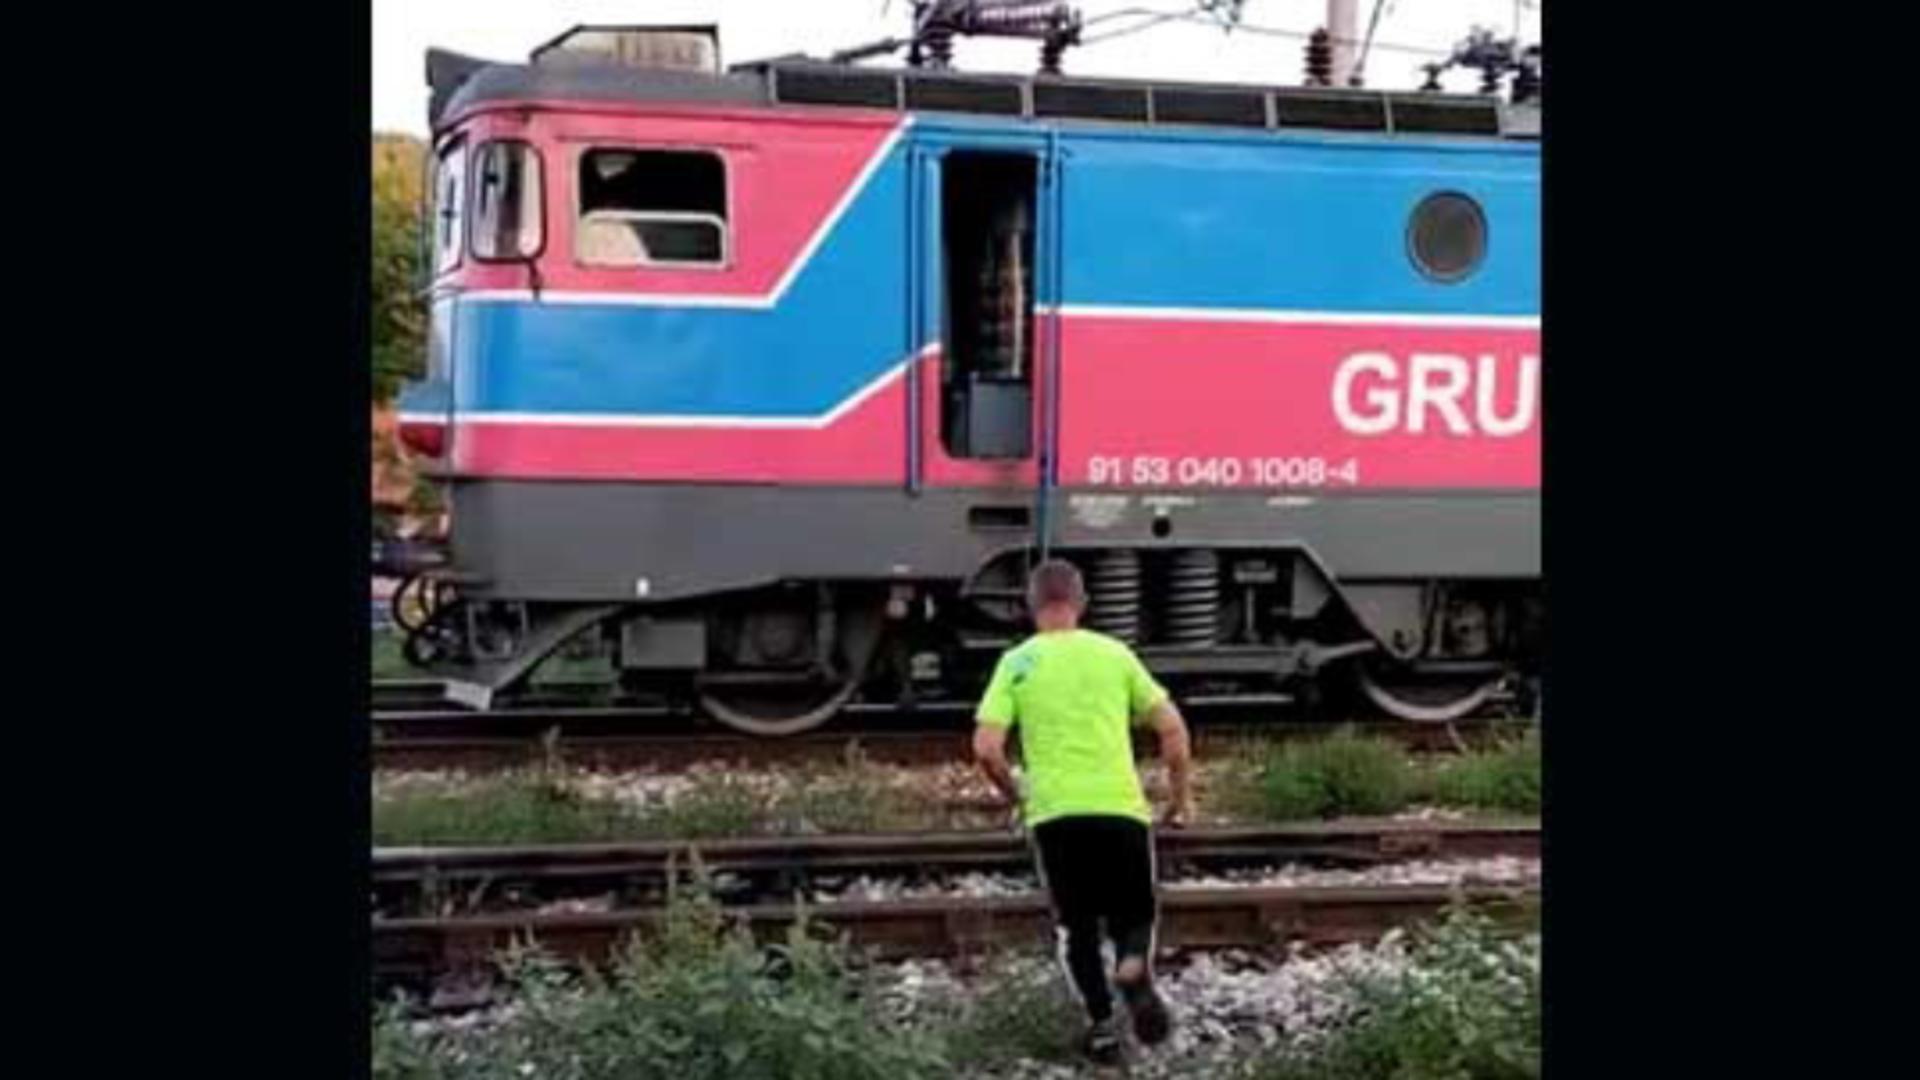 Incredibil: Conductorul a oprit trenul pe șine ca să-și facă niște cumpărături - Unde s-a întâmplat